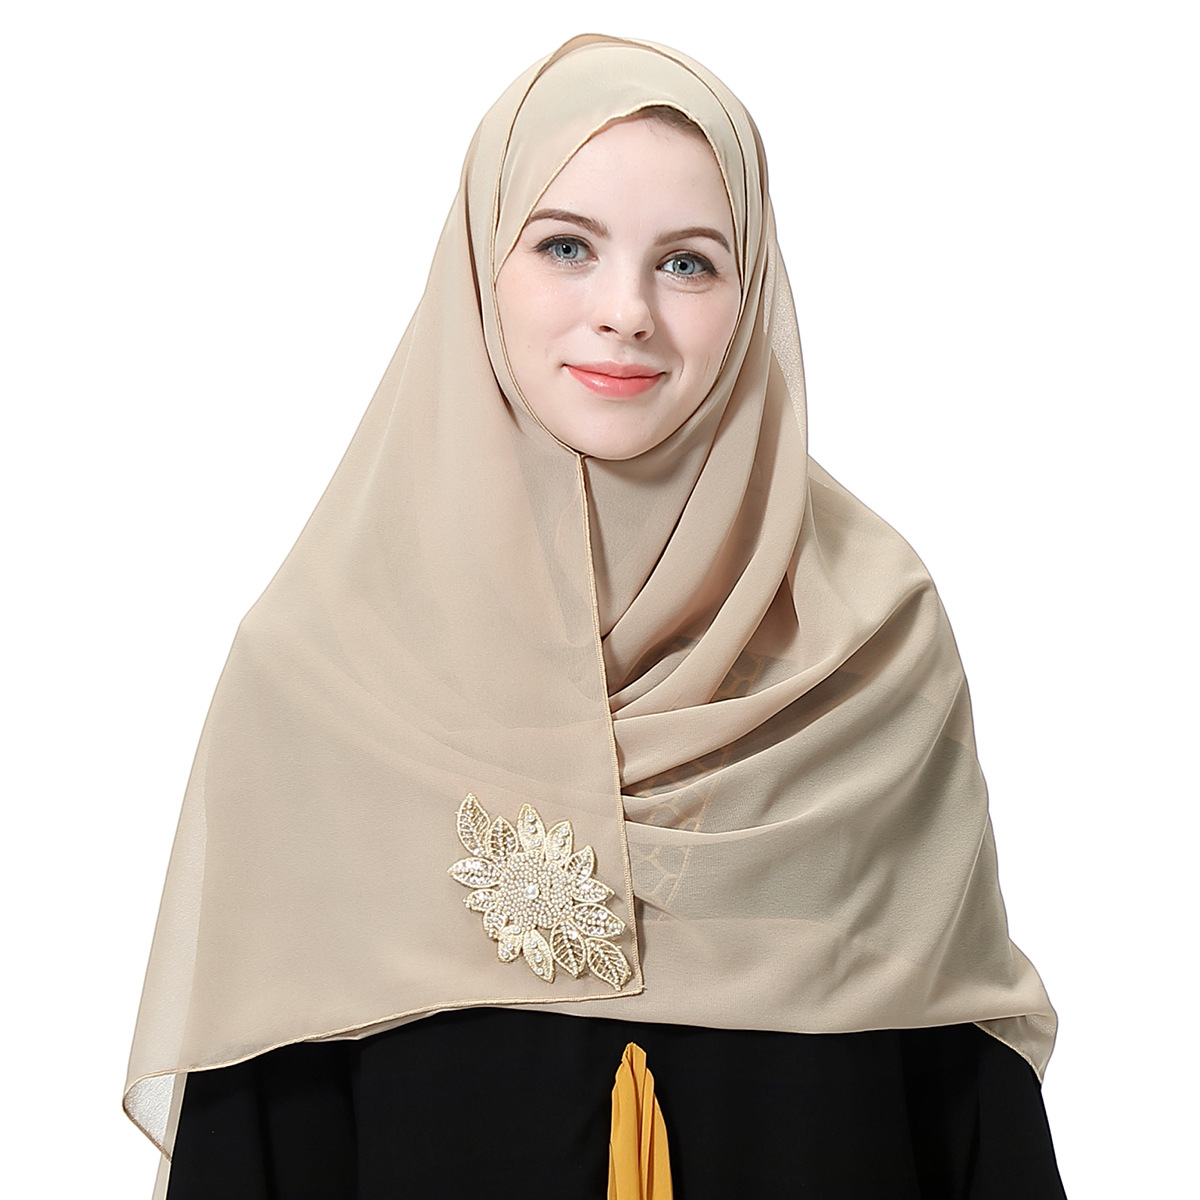 Muslim Women Hijab Beaded Chiffon Scarf Headwear Islamic Arab Shawls Wraps Stole Ebay